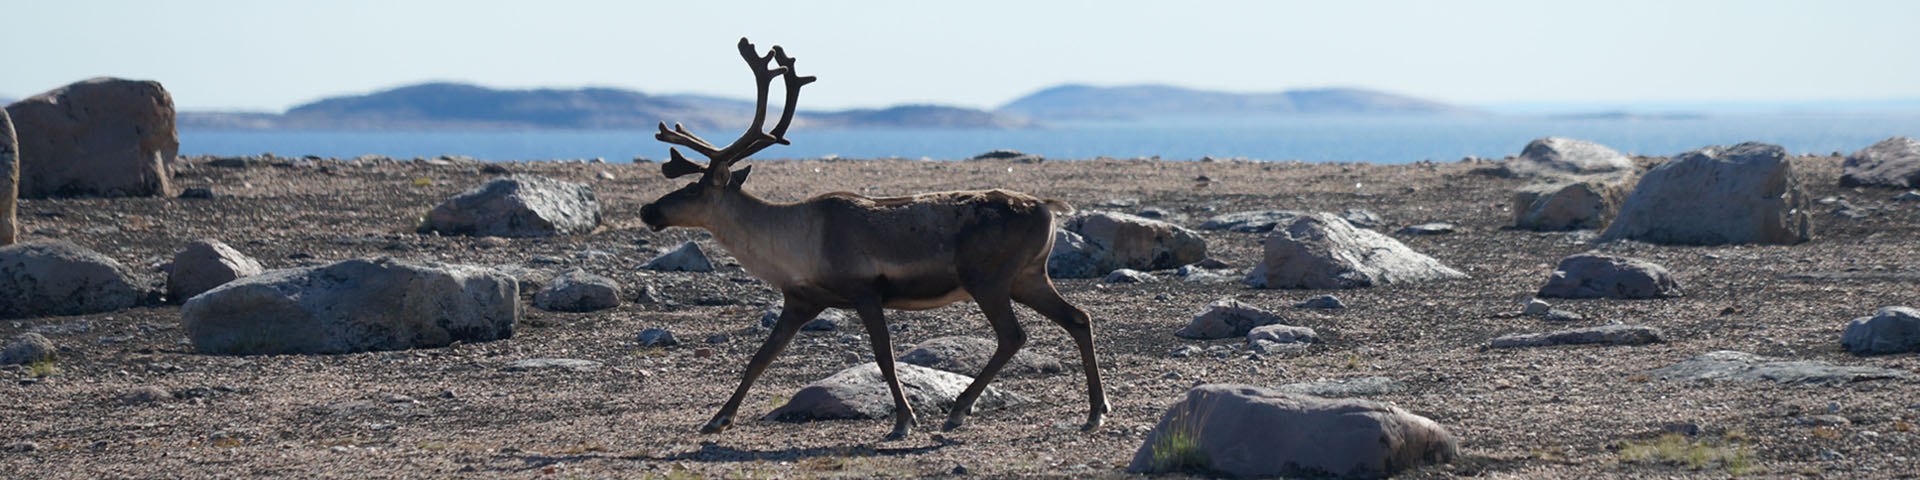 A caribou walking across a rocky tundra landscape